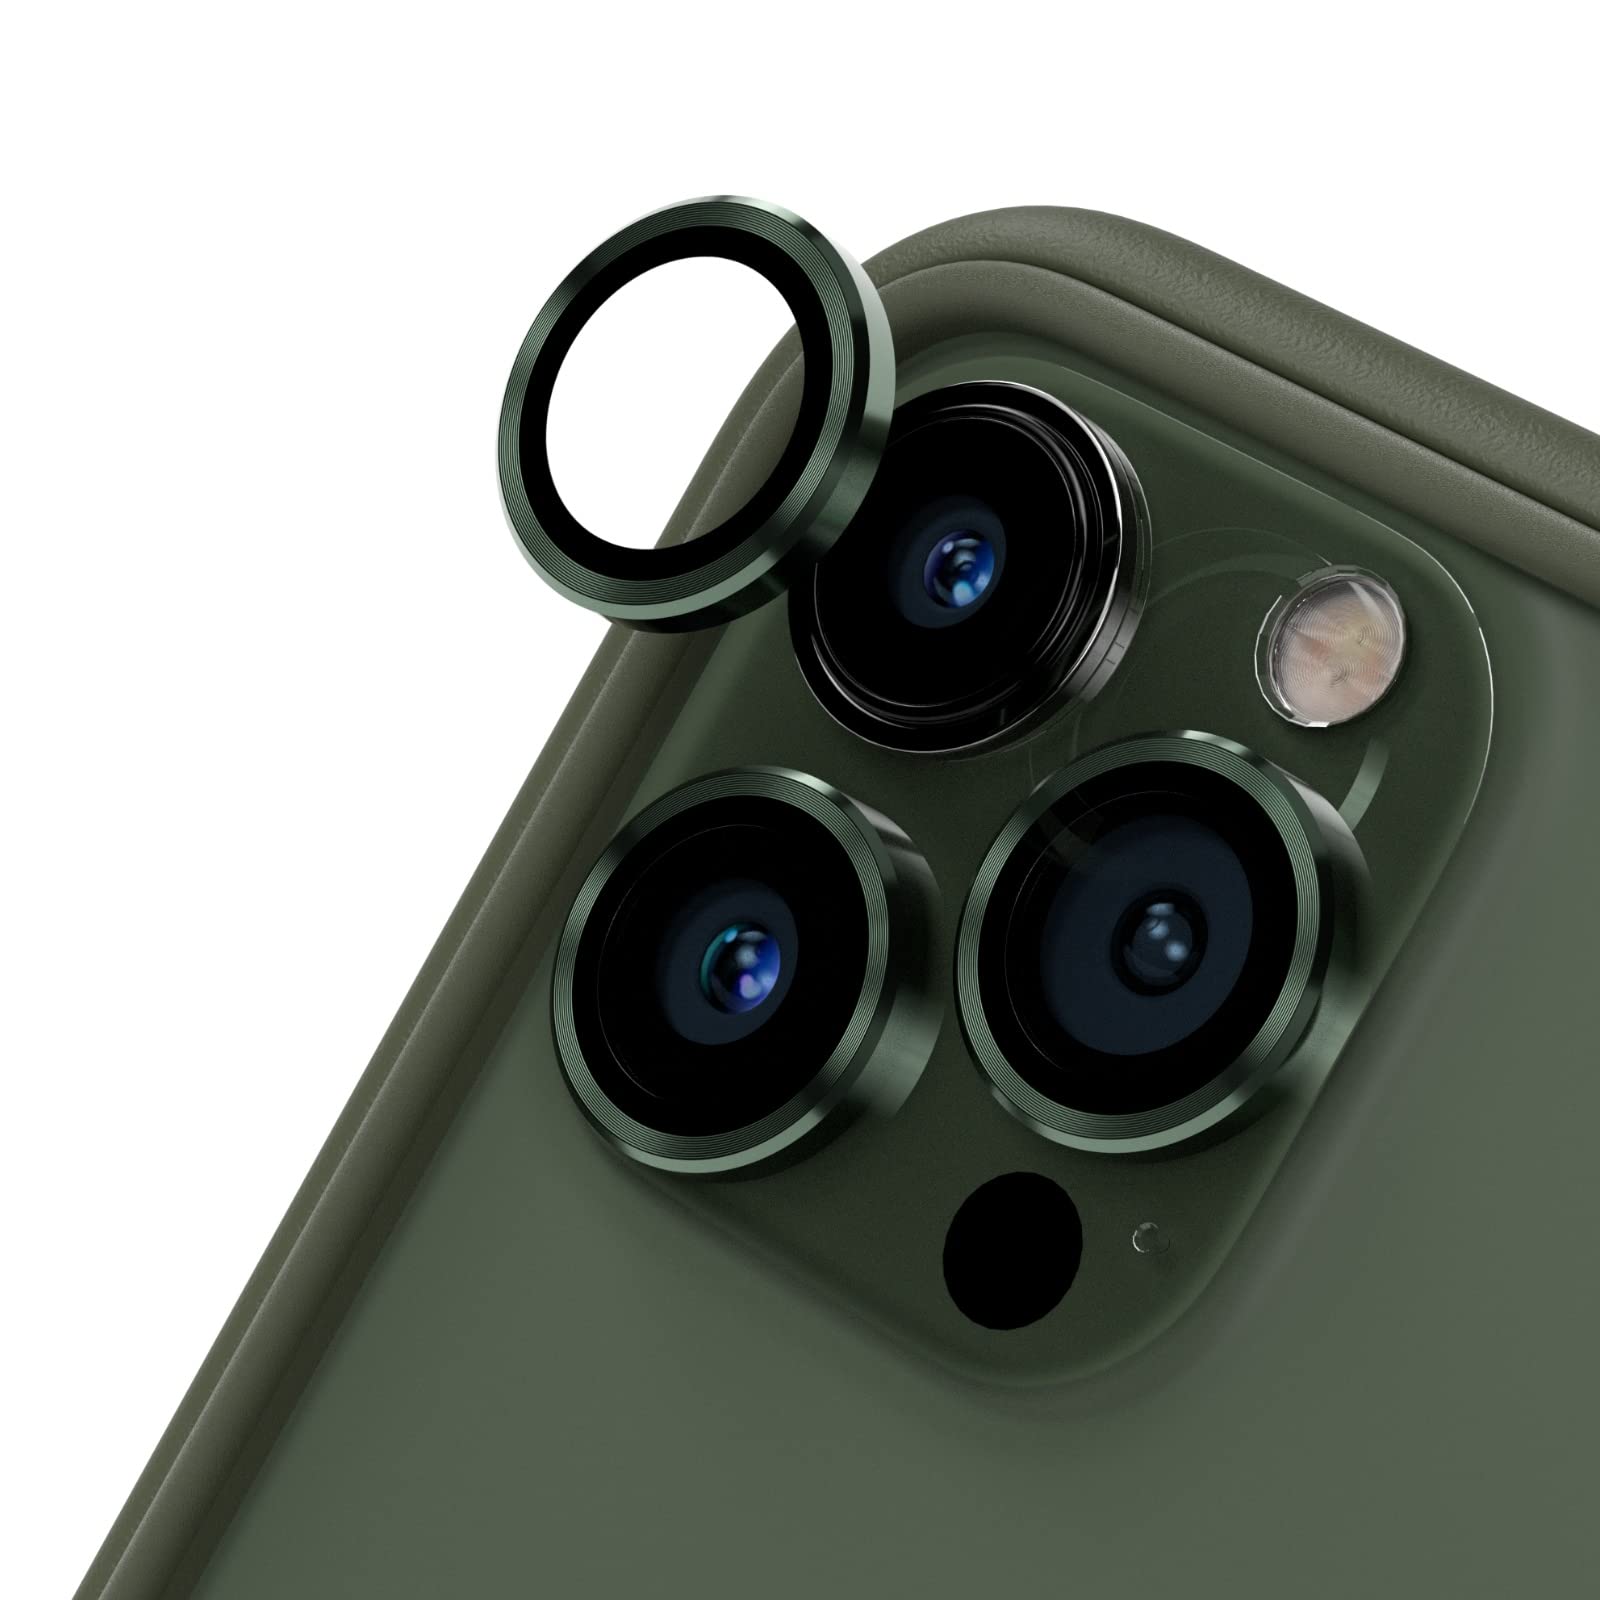 Populaire RhinoShield [Pack de 3 protection pour objectifs photo compatible avec [iPhone 13 Pro/iPhone 13 Pro Max] | Verre trempé 9H résistant aux rayures avec une fine bordure en aluminium anodisé - vert PKBfpC6Gw mode